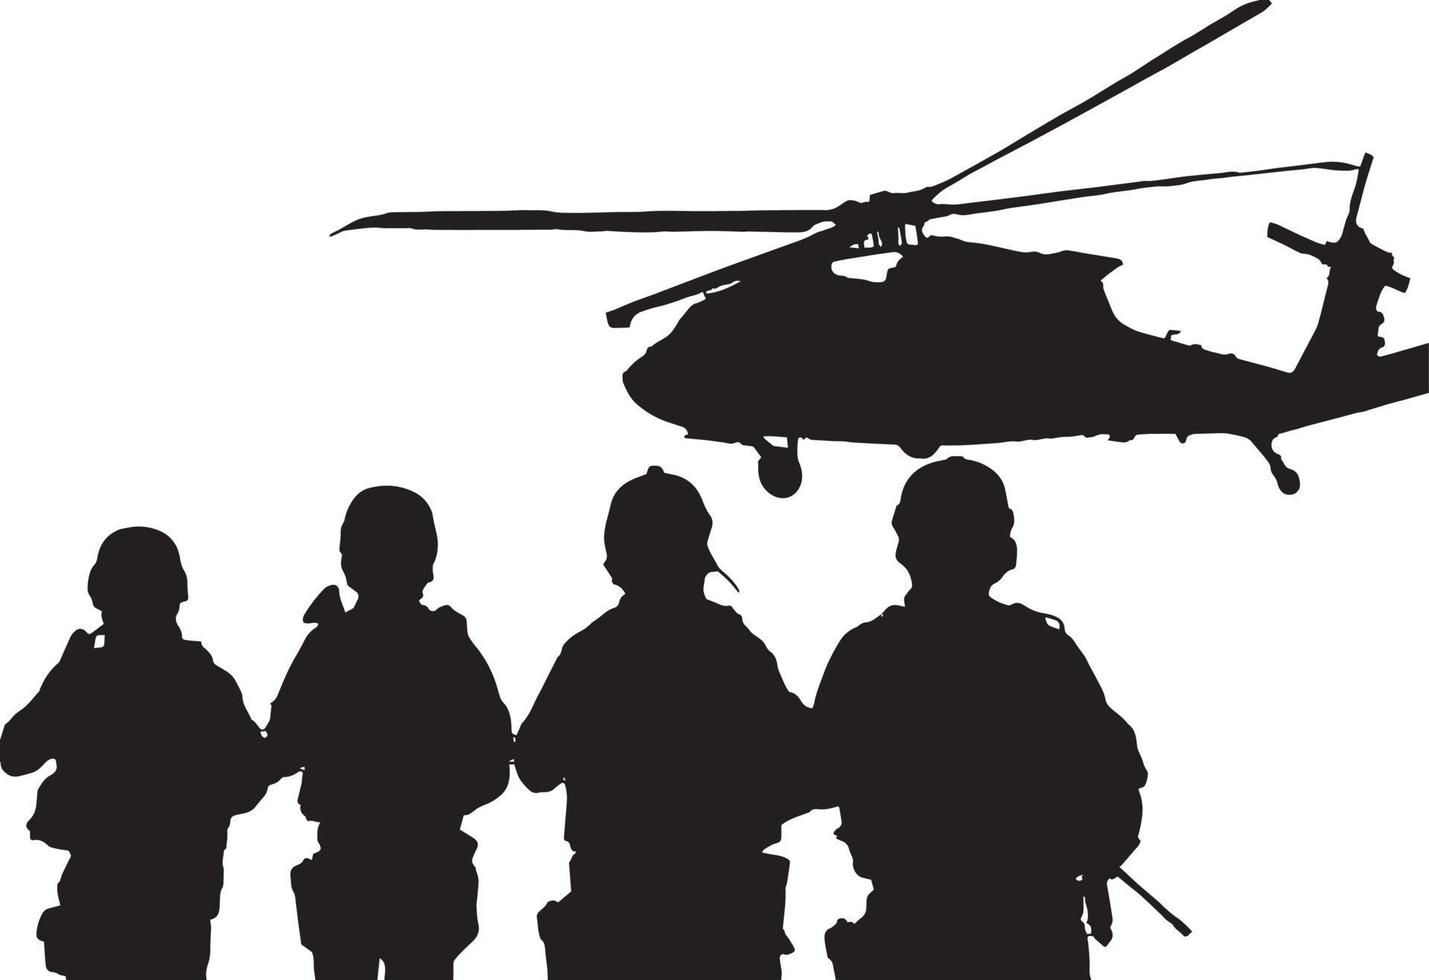 reeks van leger silhouetten, leger vector illustratie, leger soldaten, leger silhouetten achtergrond.